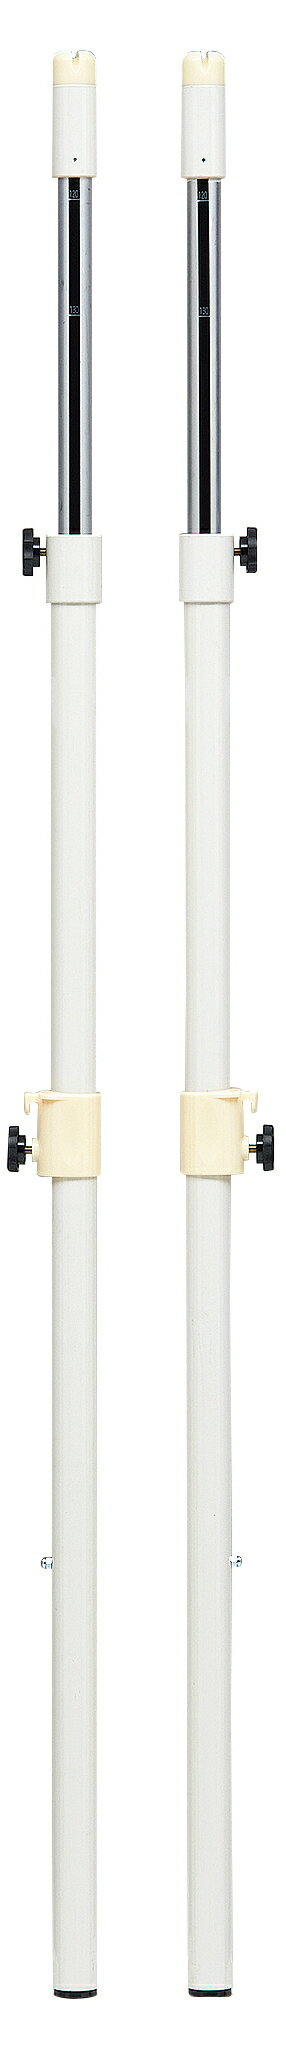 支柱用品 軽量でサビにくい教育用アルミ支柱 軽いので支柱移動のわずらわしさを解消 設置・移動に適しています 支柱に一定の荷重を加えたとき、破損防止等の安全のため発生するしなり(たわみ)がアルミ製のためスチール製より大きくなります。バドミントン支柱・バド・インディアカ支柱は、床金具の「内径」と「深さ」を確認してご発注ください。強度不均衡による事故を防止する為、支柱の1/2組販売は対応しておりません。 素材：支柱40mmアルミパイプ(肉厚3mm) 2本1組 重さ：5.5kg/組 高さ120〜225cm無段階調節(目盛り付) 下部ゴム付 樹脂製スライドフック付●お支払い方法で代引きはできません。 ●量やタイミング、メーカー在庫状況によっては納期がかかります。 ●沖縄県、離島のお客様は送料都度別途お見積りとなります。 ●メーカー指定便のため、運送会社のご選択はできません。 ●細かいお時間指定や夜間配送はできません。 ●日曜祝日配送ができない場合もあります。 ●個人宅向けではないので個人宅配送の場合は全国都度送料お見積りです。配送できない場合もあります。 ●法人および施設でも山奥や道が狭い場所など配送できない場合があります。 ●発送前でも発送準備中であればご変更、キャンセルはできません。 ●画像はイメージです。